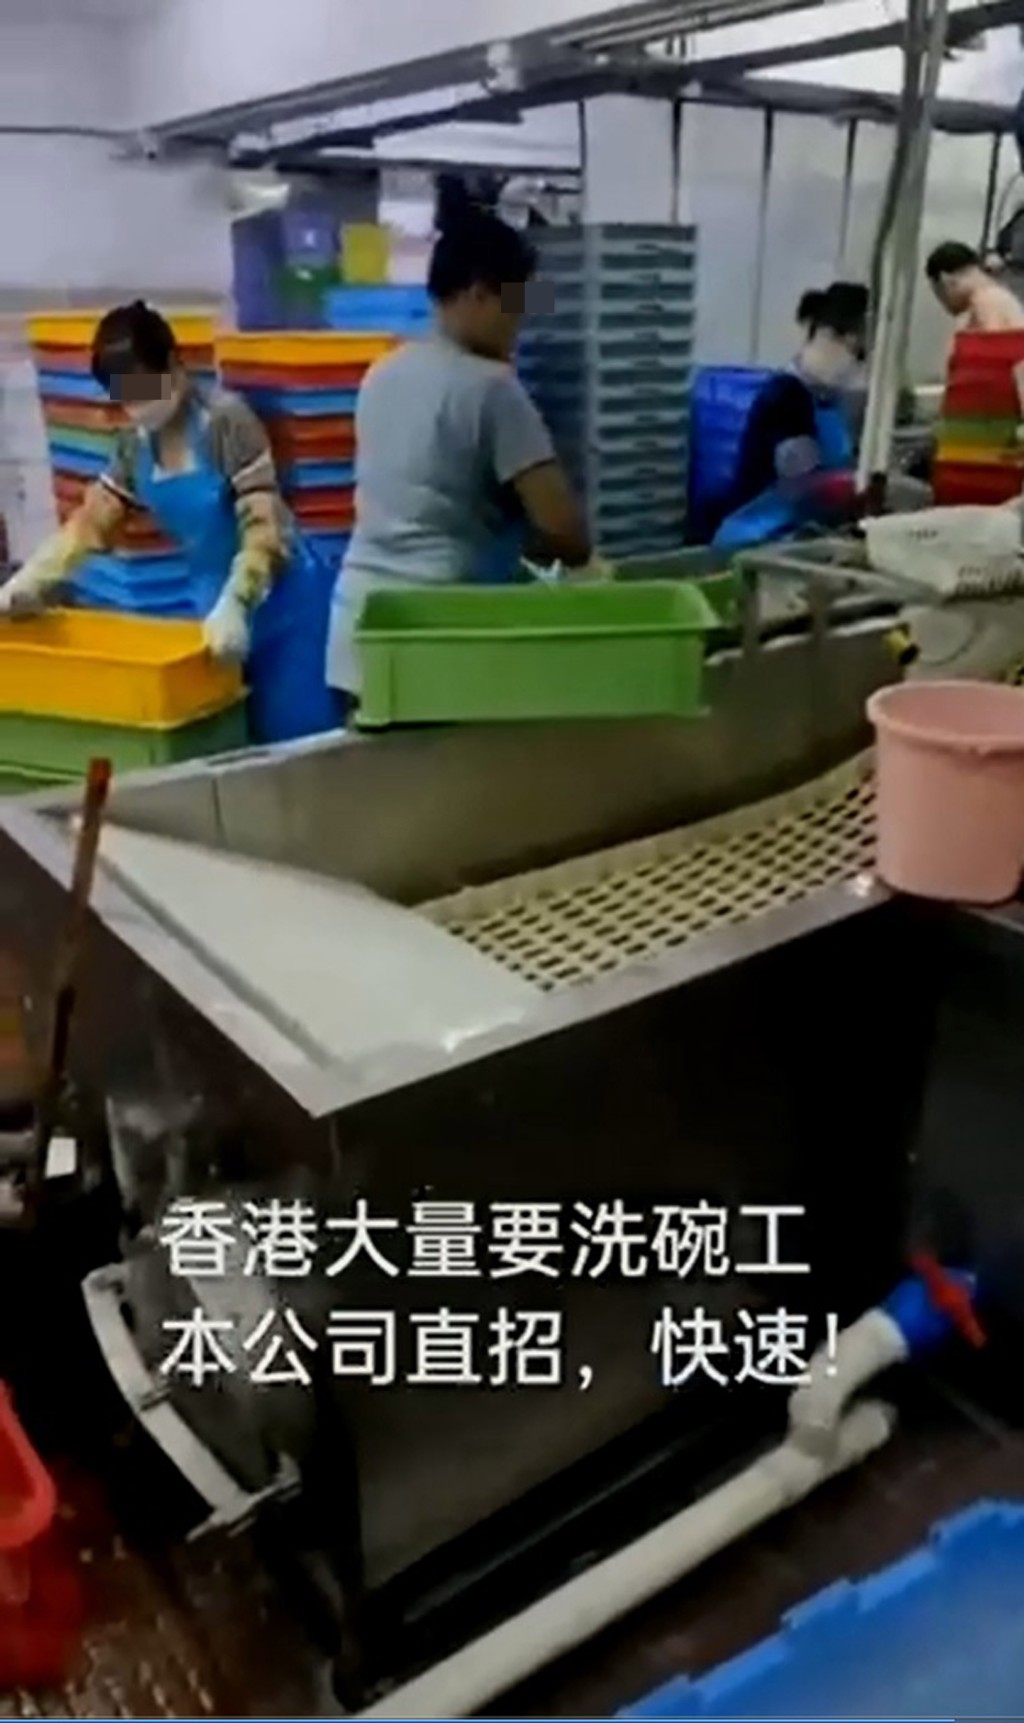 深圳中介稱可安排內地人赴港當洗碗工人。